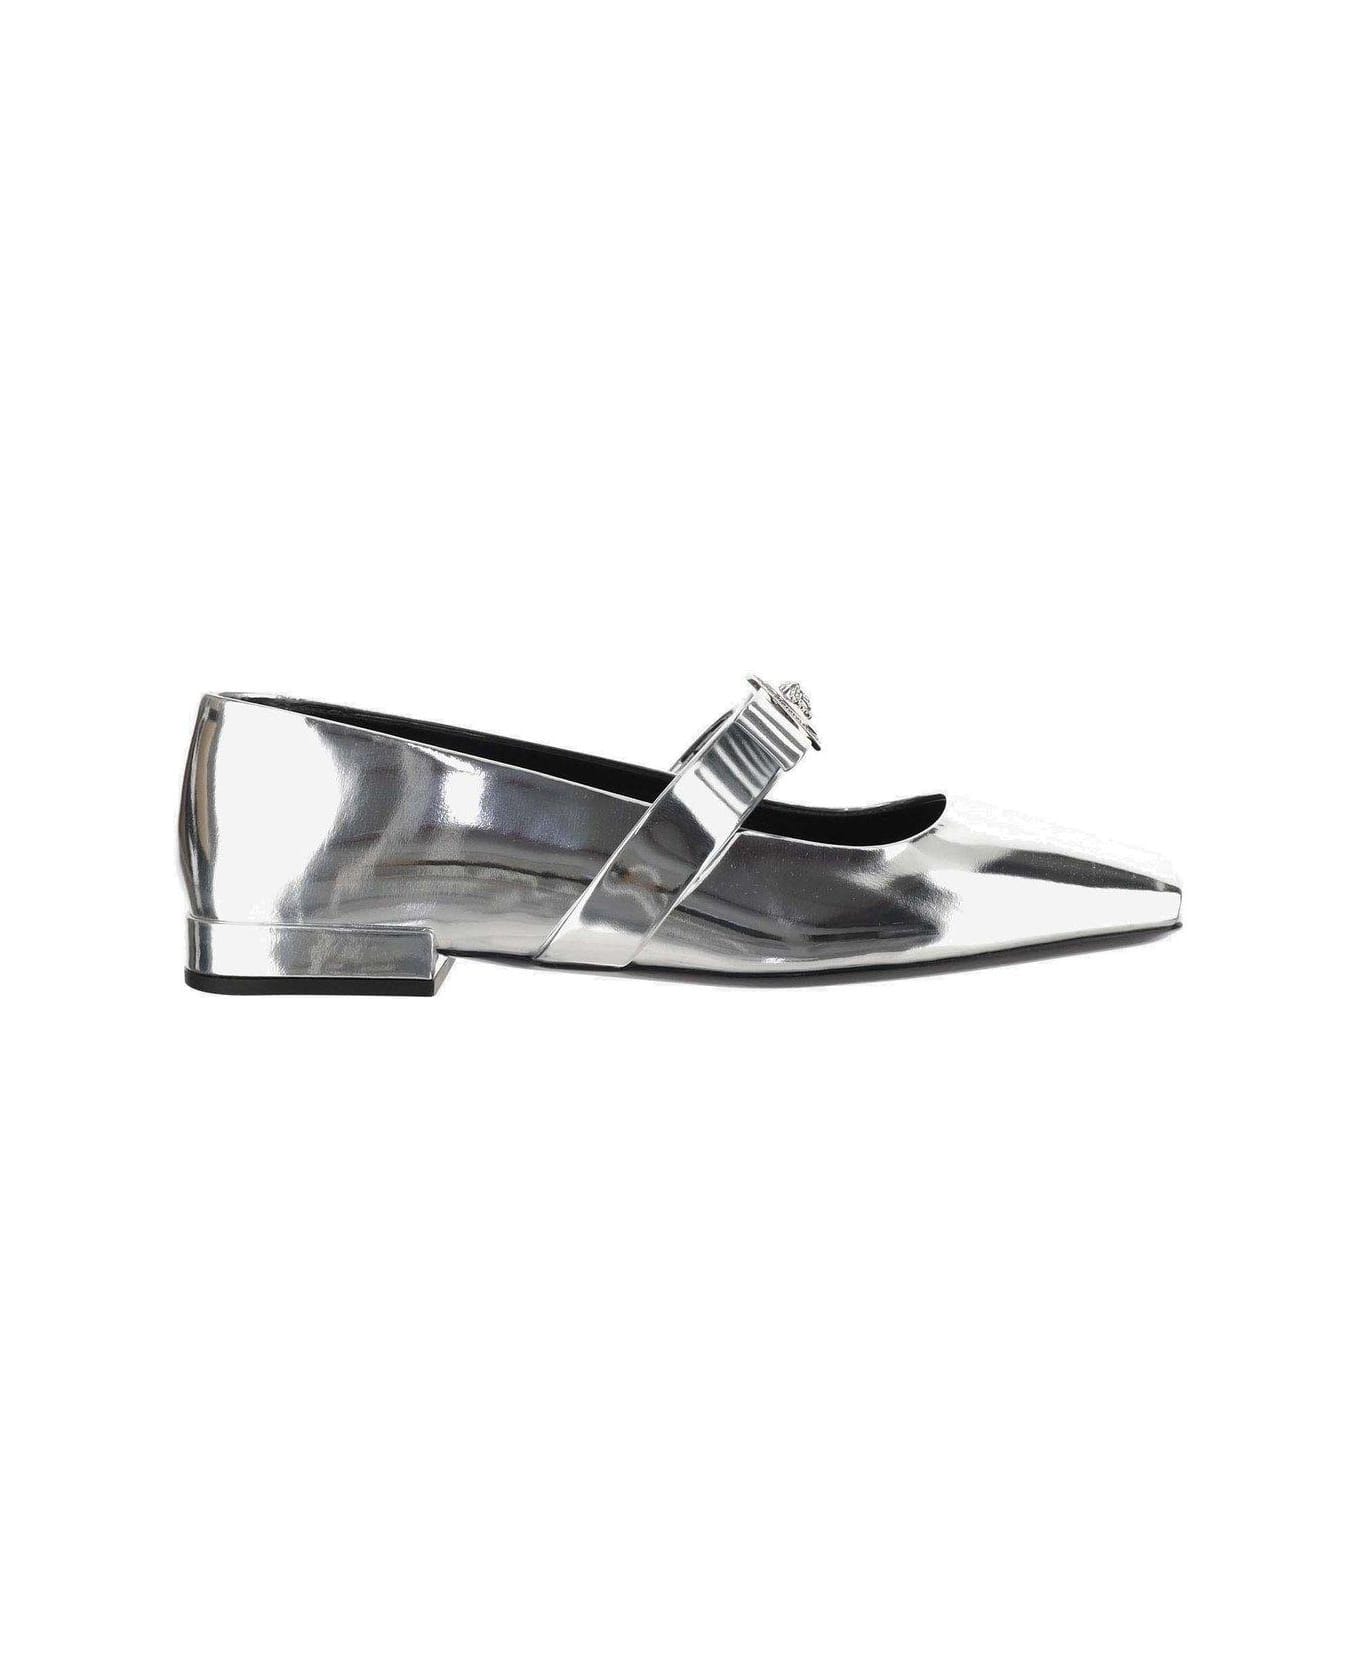 Versace Medusa-plaque Square-toe Metallic Ballerina Shoes - Metallic フラットシューズ